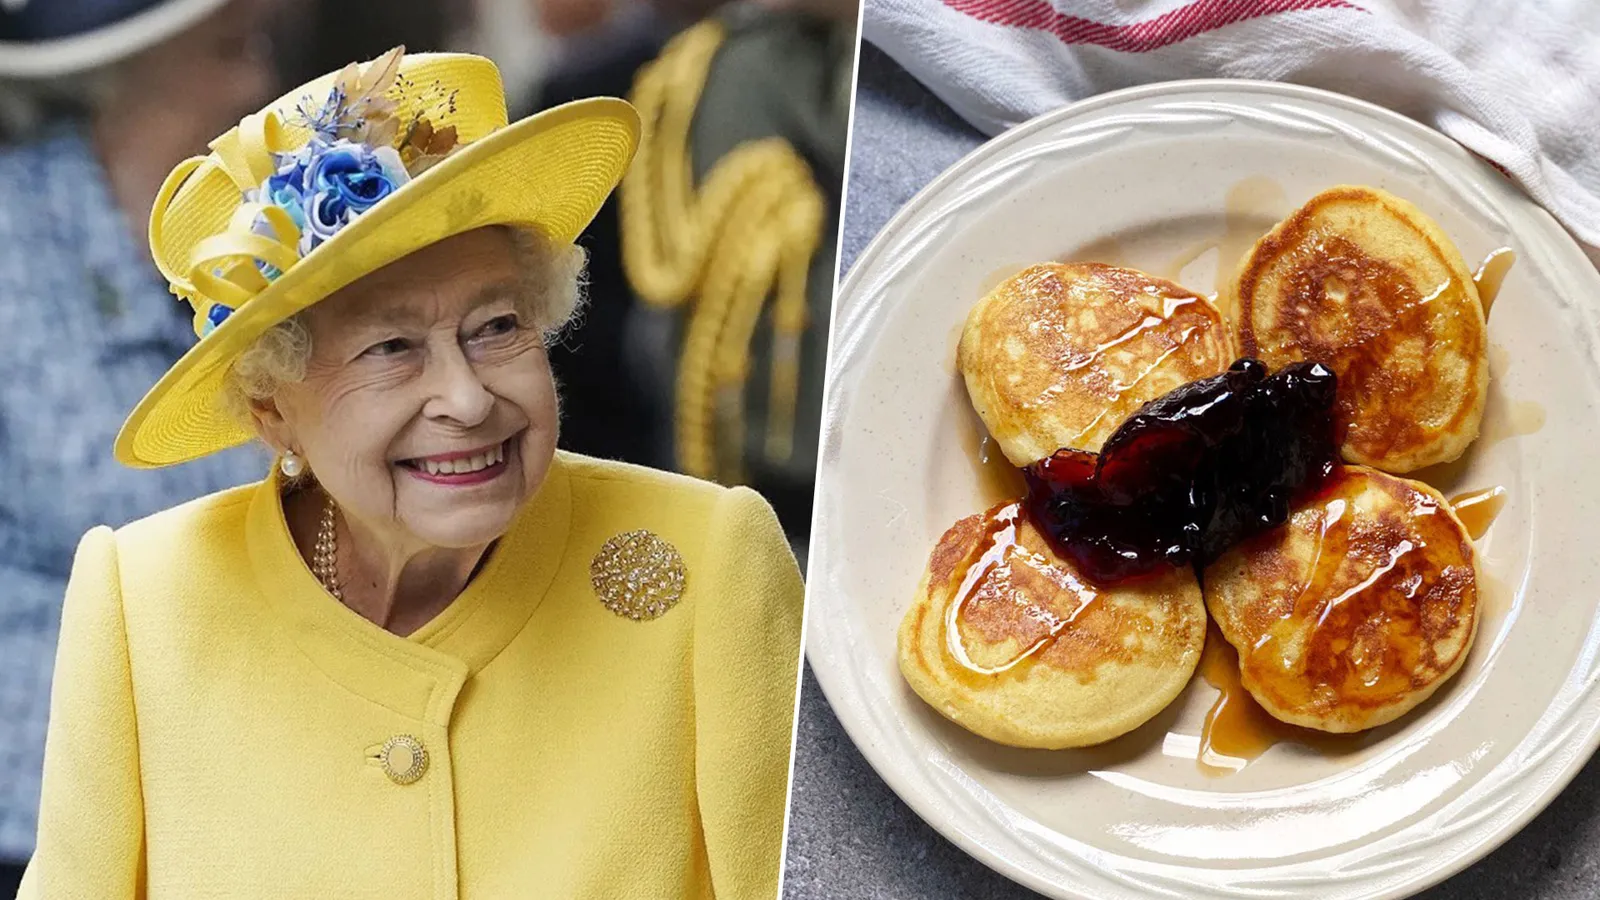 Resep Pancake Ratu Elizabeth II, Otentik Ditulis Tangan oleh Sang Ratu